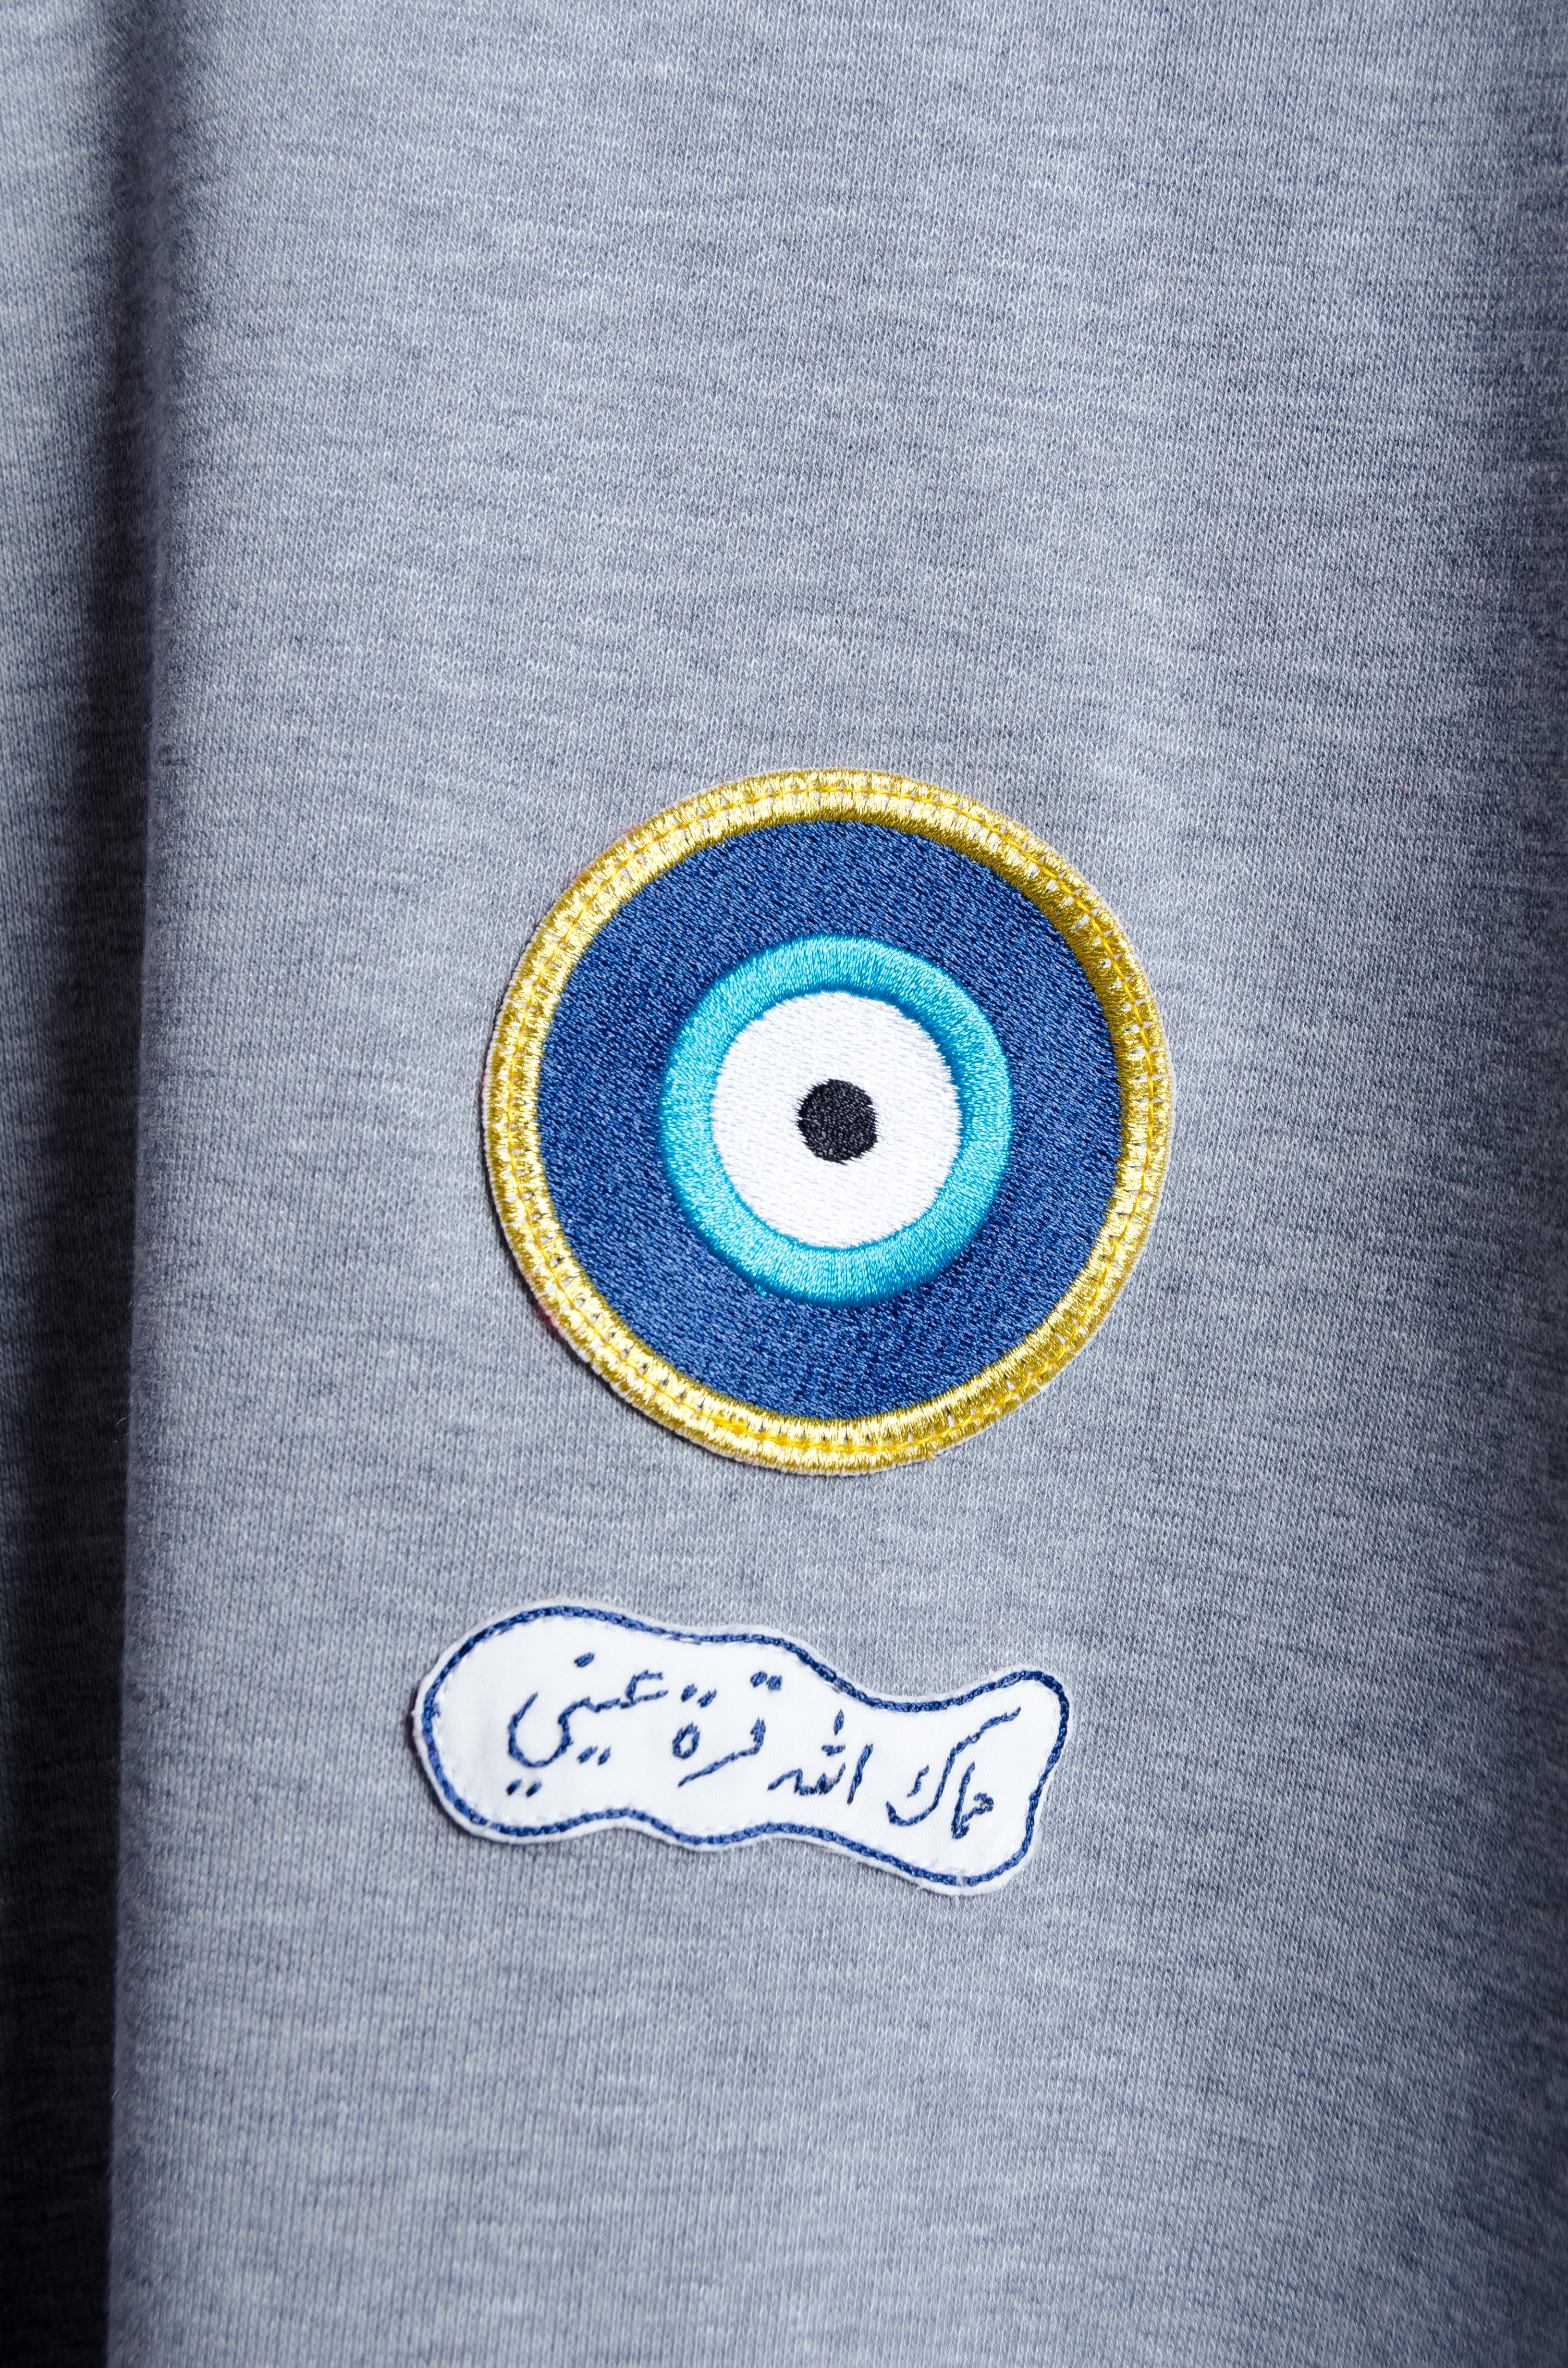 Embroidered Eye Motif - BiC